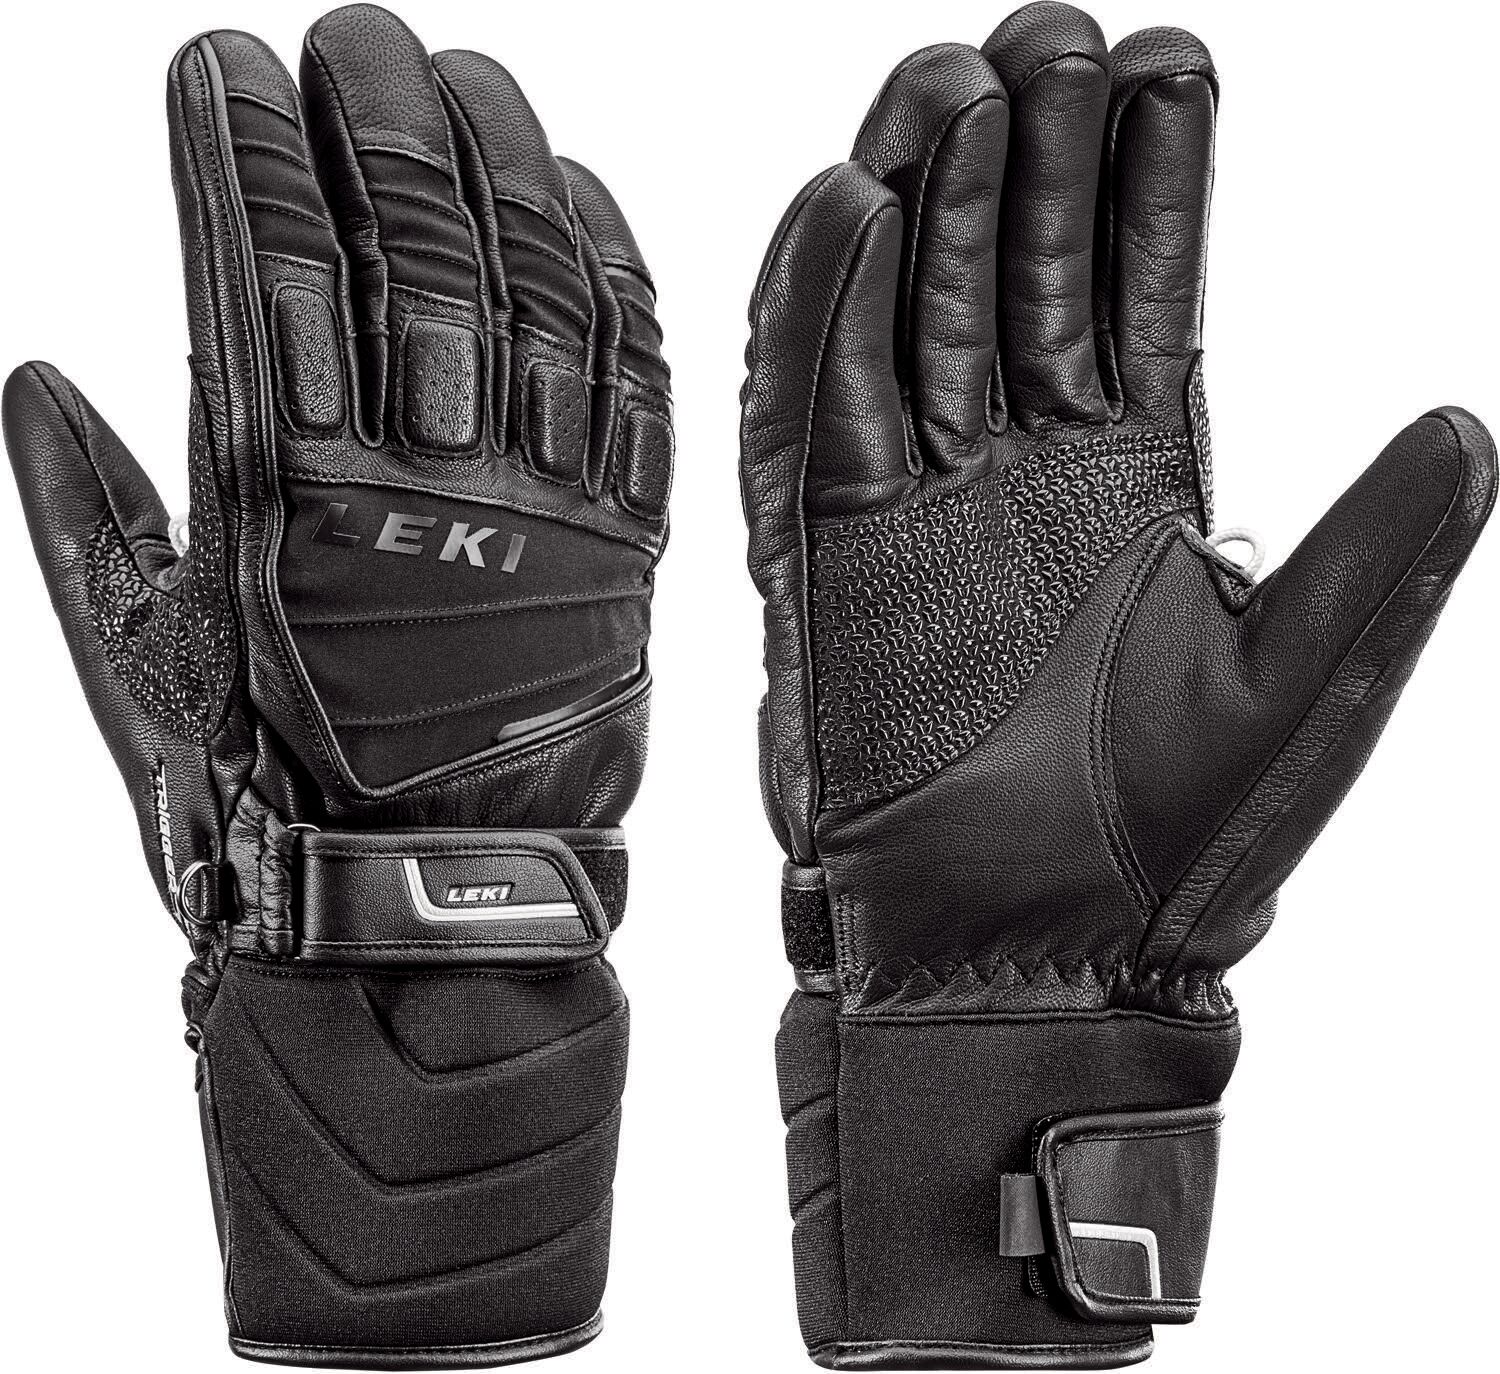 Leki - Griffin S - Gloves